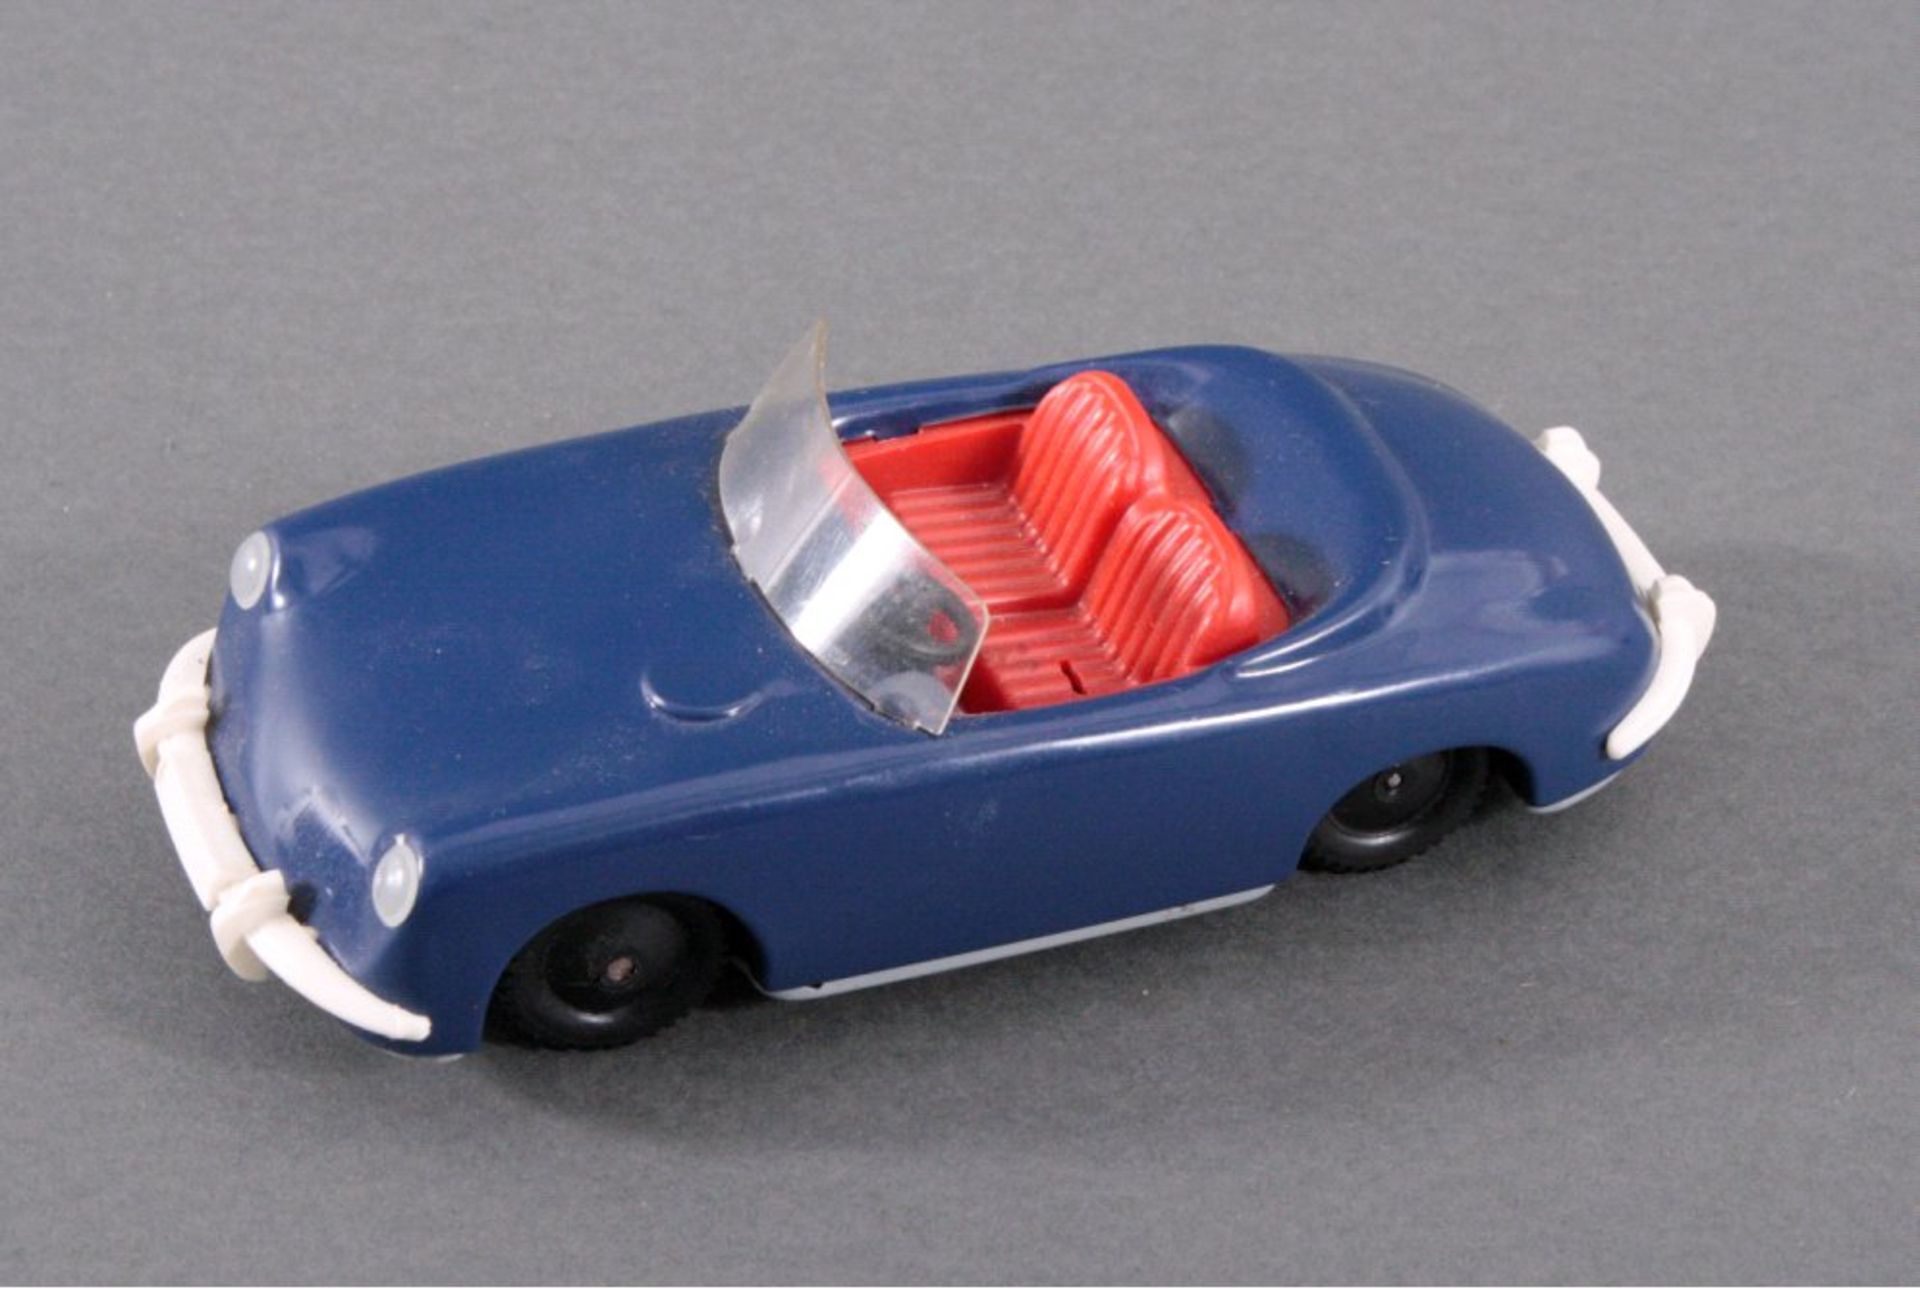 Spielzeugauto des Herstellers TCO,VW Porsche, Blech blau lackiert, Uhrwerksantrieb, ca. L-16cm